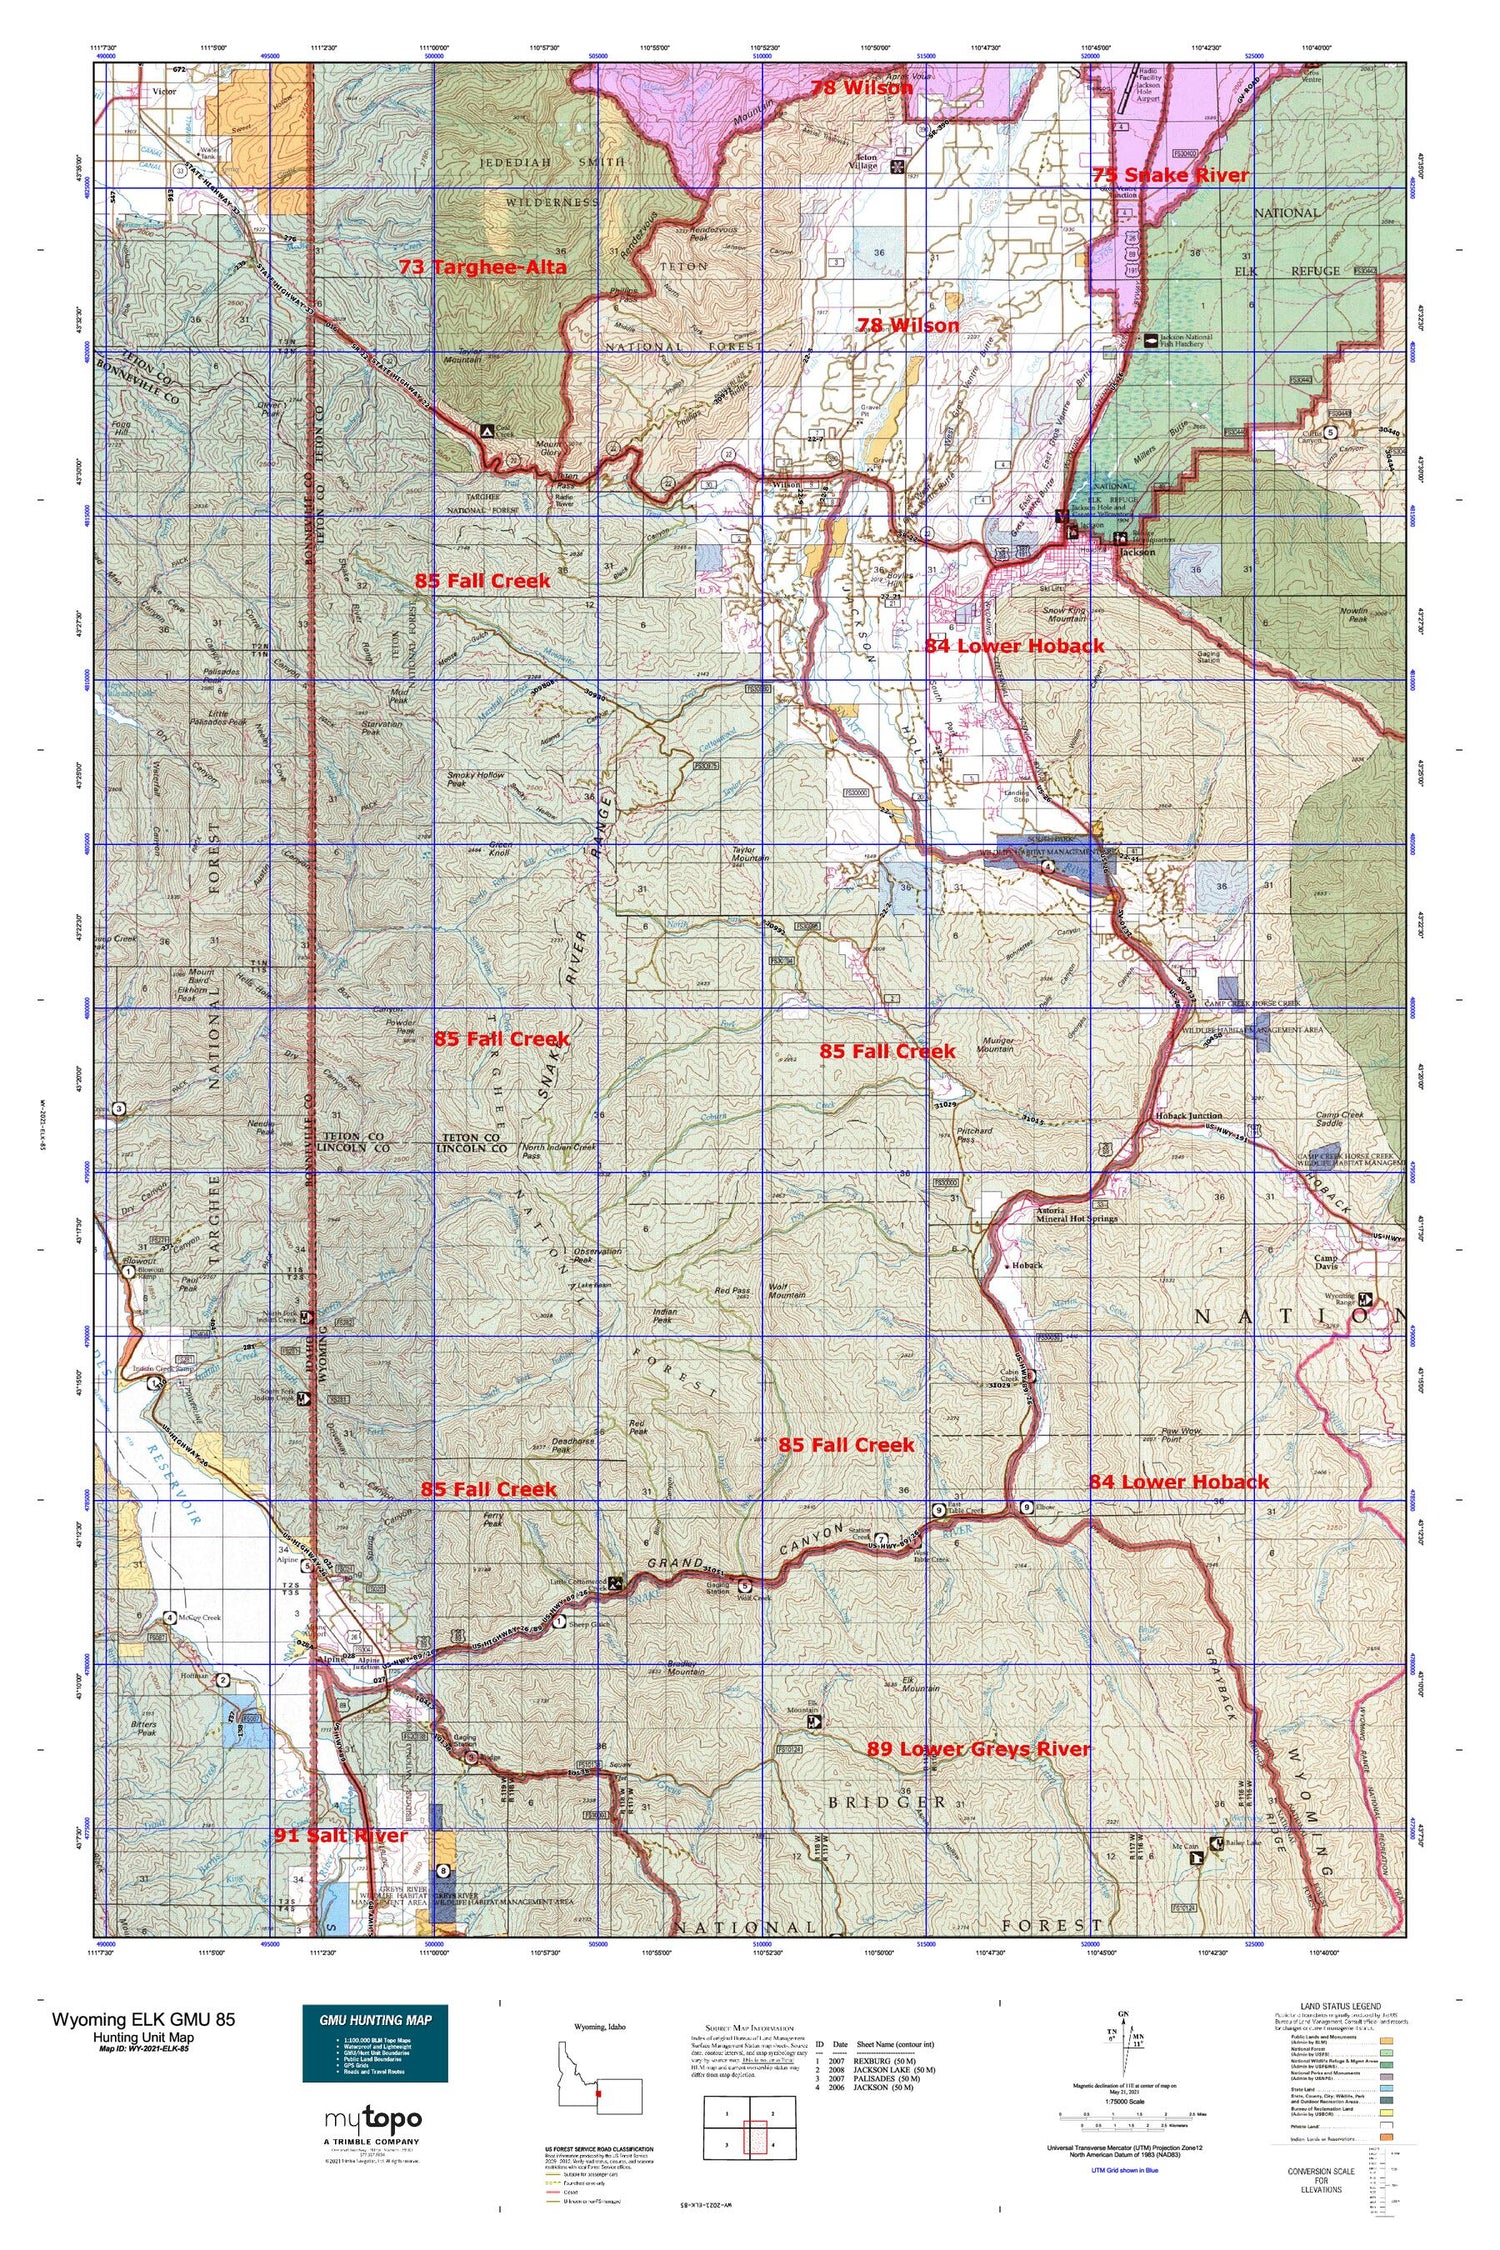 Wyoming Elk GMU 85 Map Image